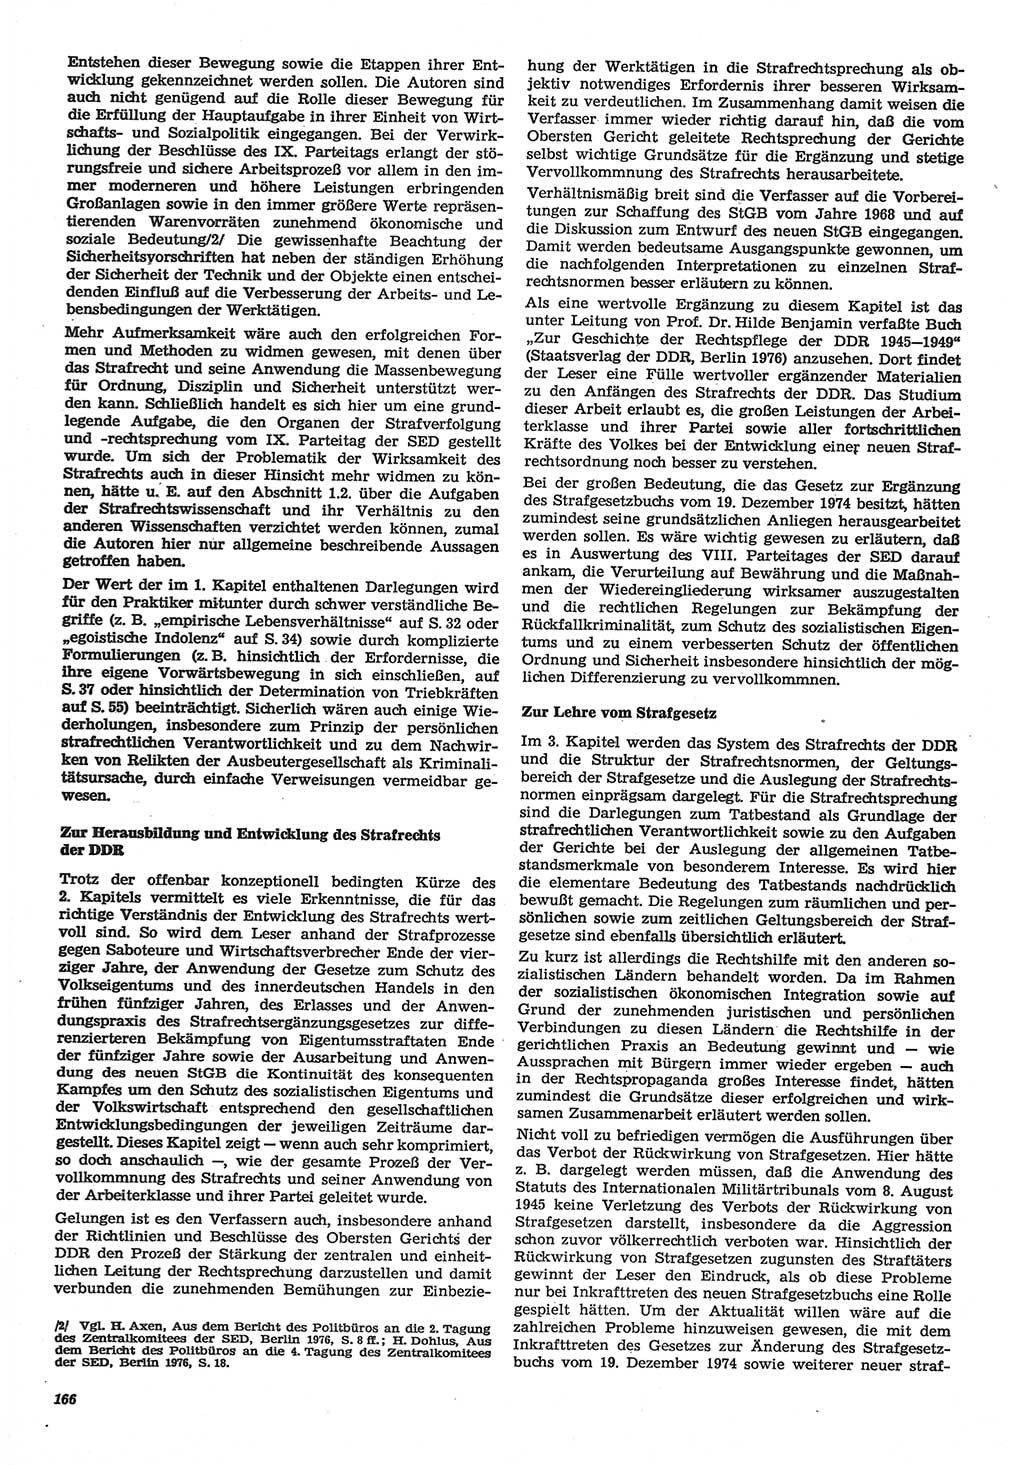 Neue Justiz (NJ), Zeitschrift für Recht und Rechtswissenschaft-Zeitschrift, sozialistisches Recht und Gesetzlichkeit, 31. Jahrgang 1977, Seite 166 (NJ DDR 1977, S. 166)